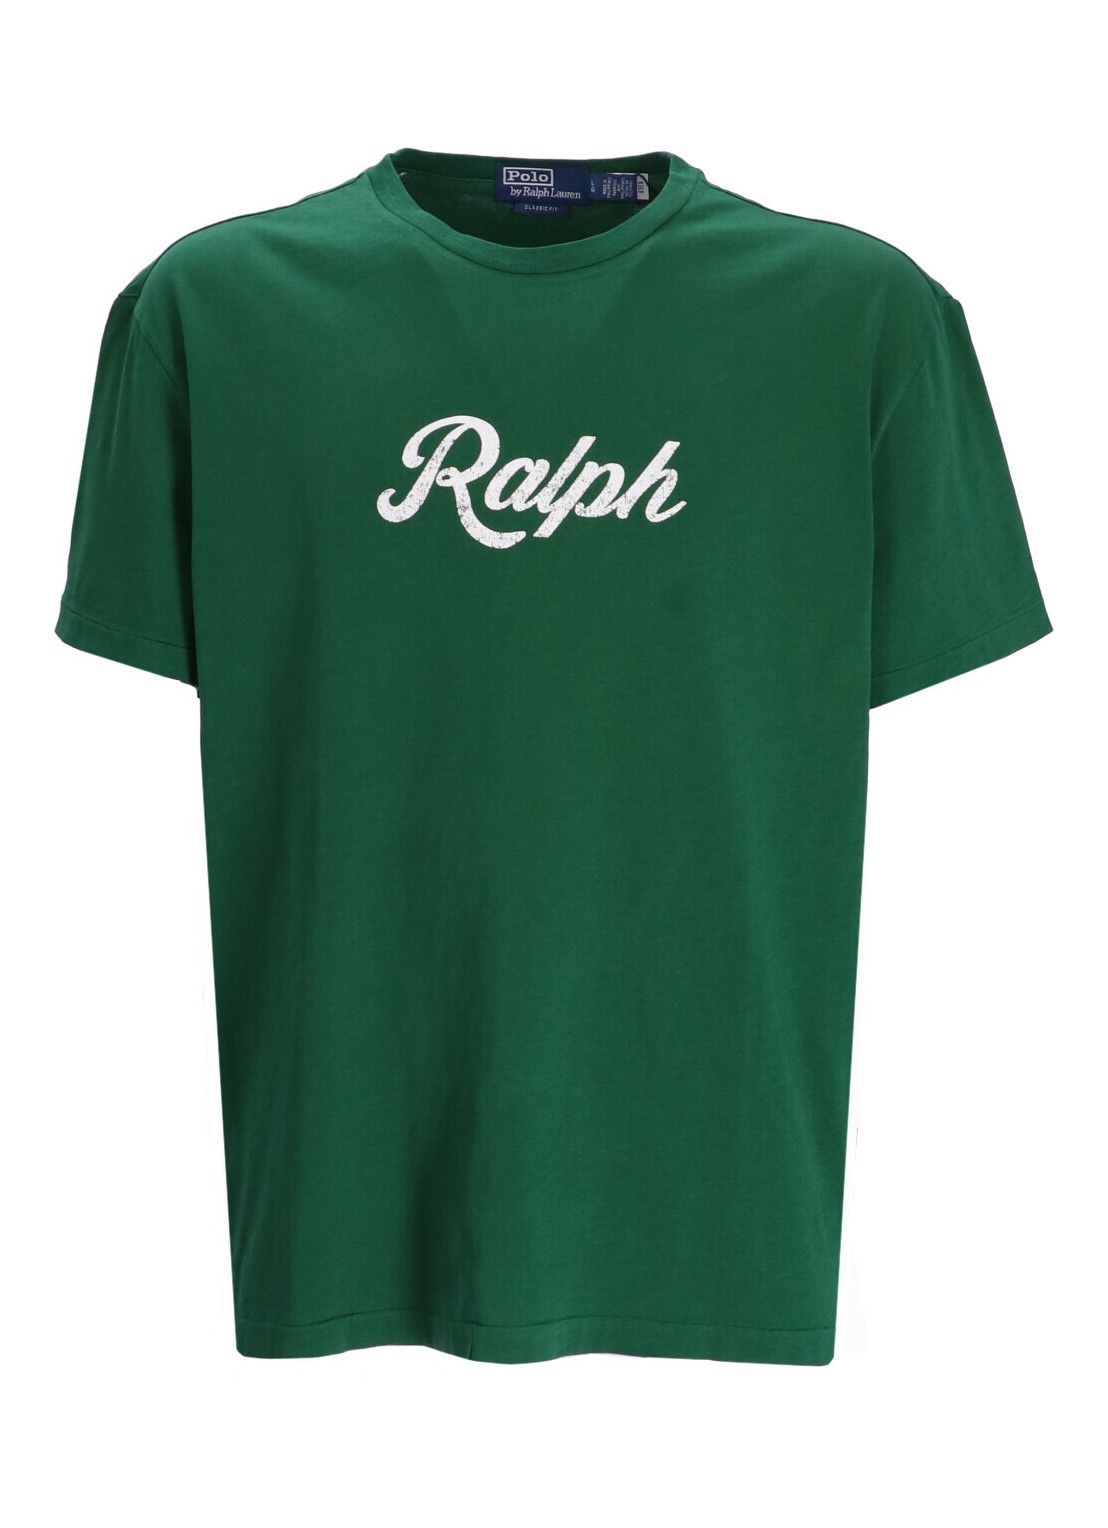 Camiseta polo ralph lauren t-shirt man sscnclsm1-short sleeve-t-shirt 710936401003 new forest talla 